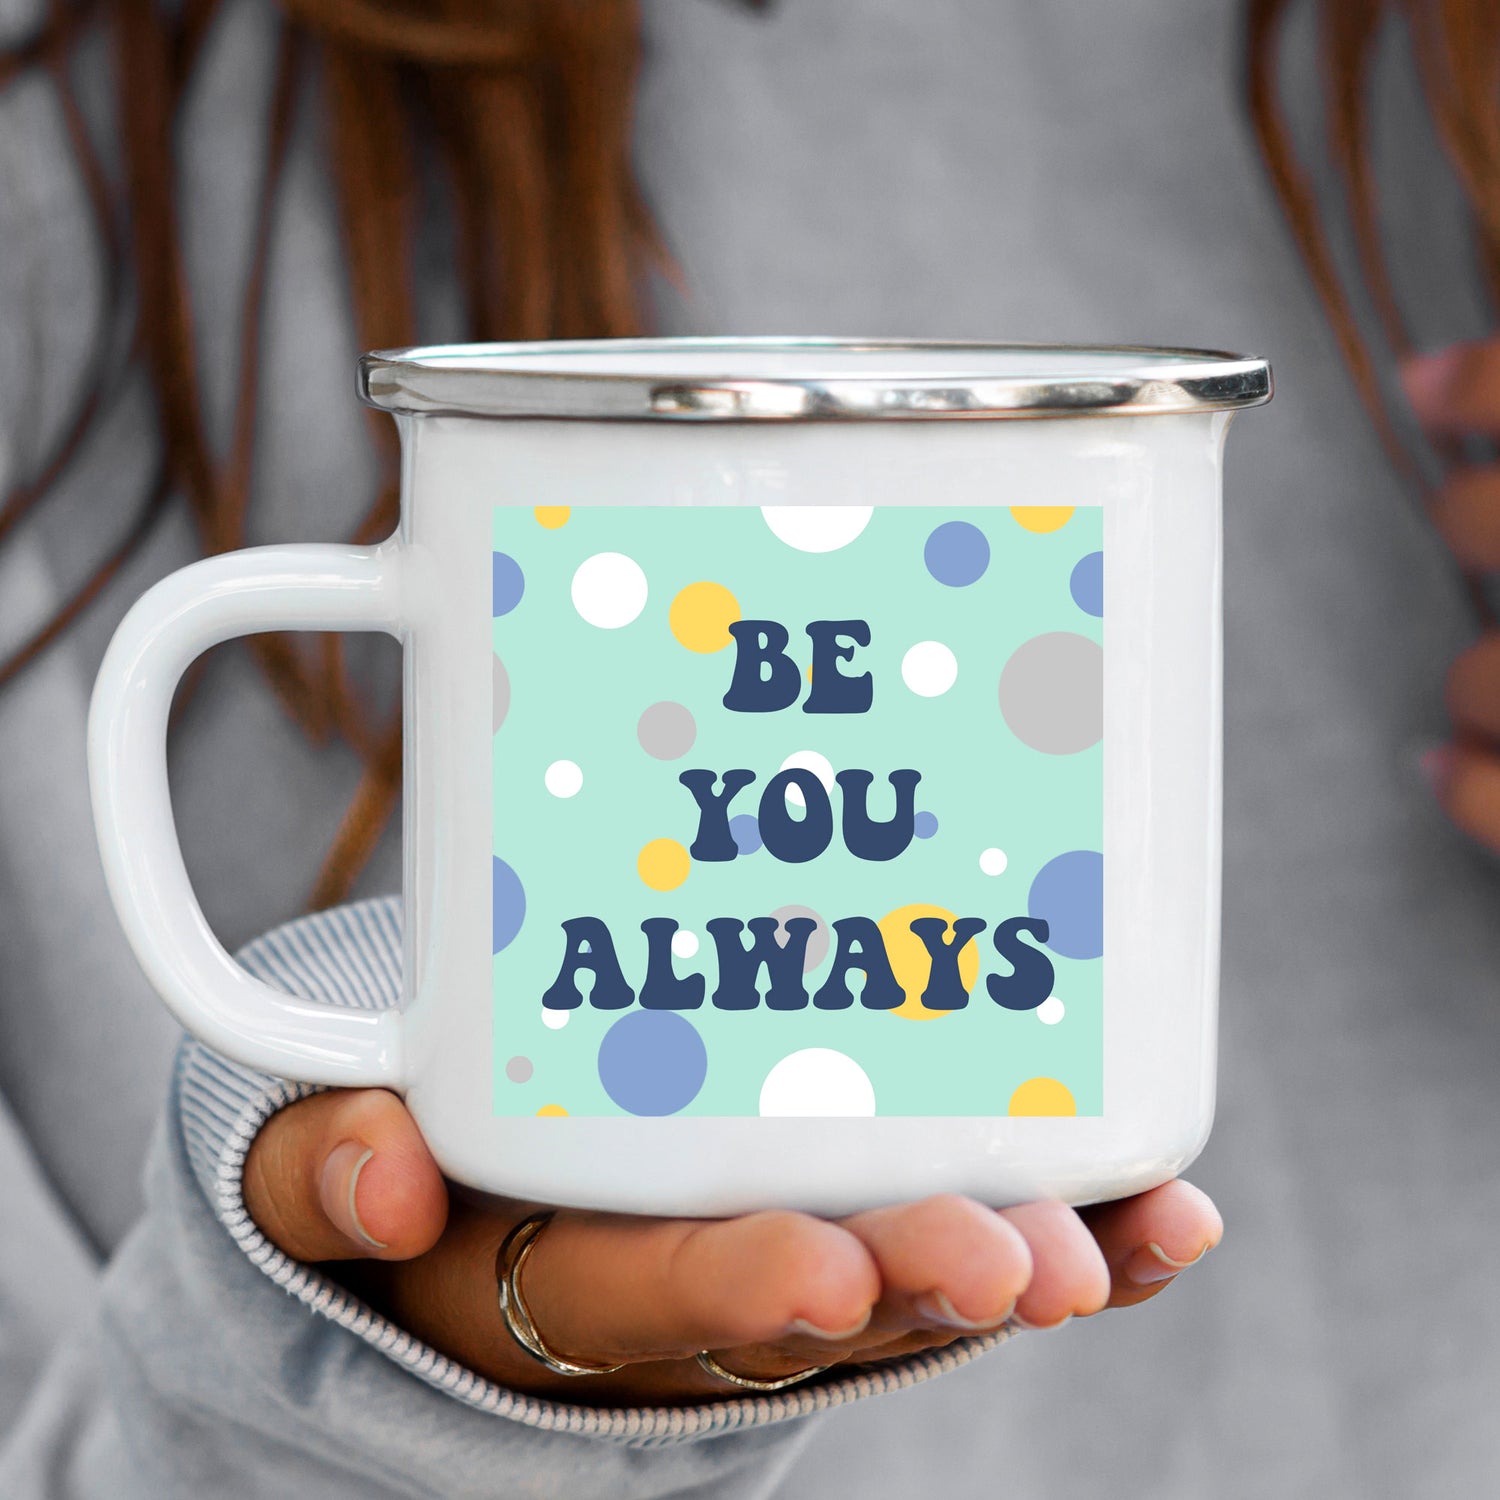 be-you-enamel-mug